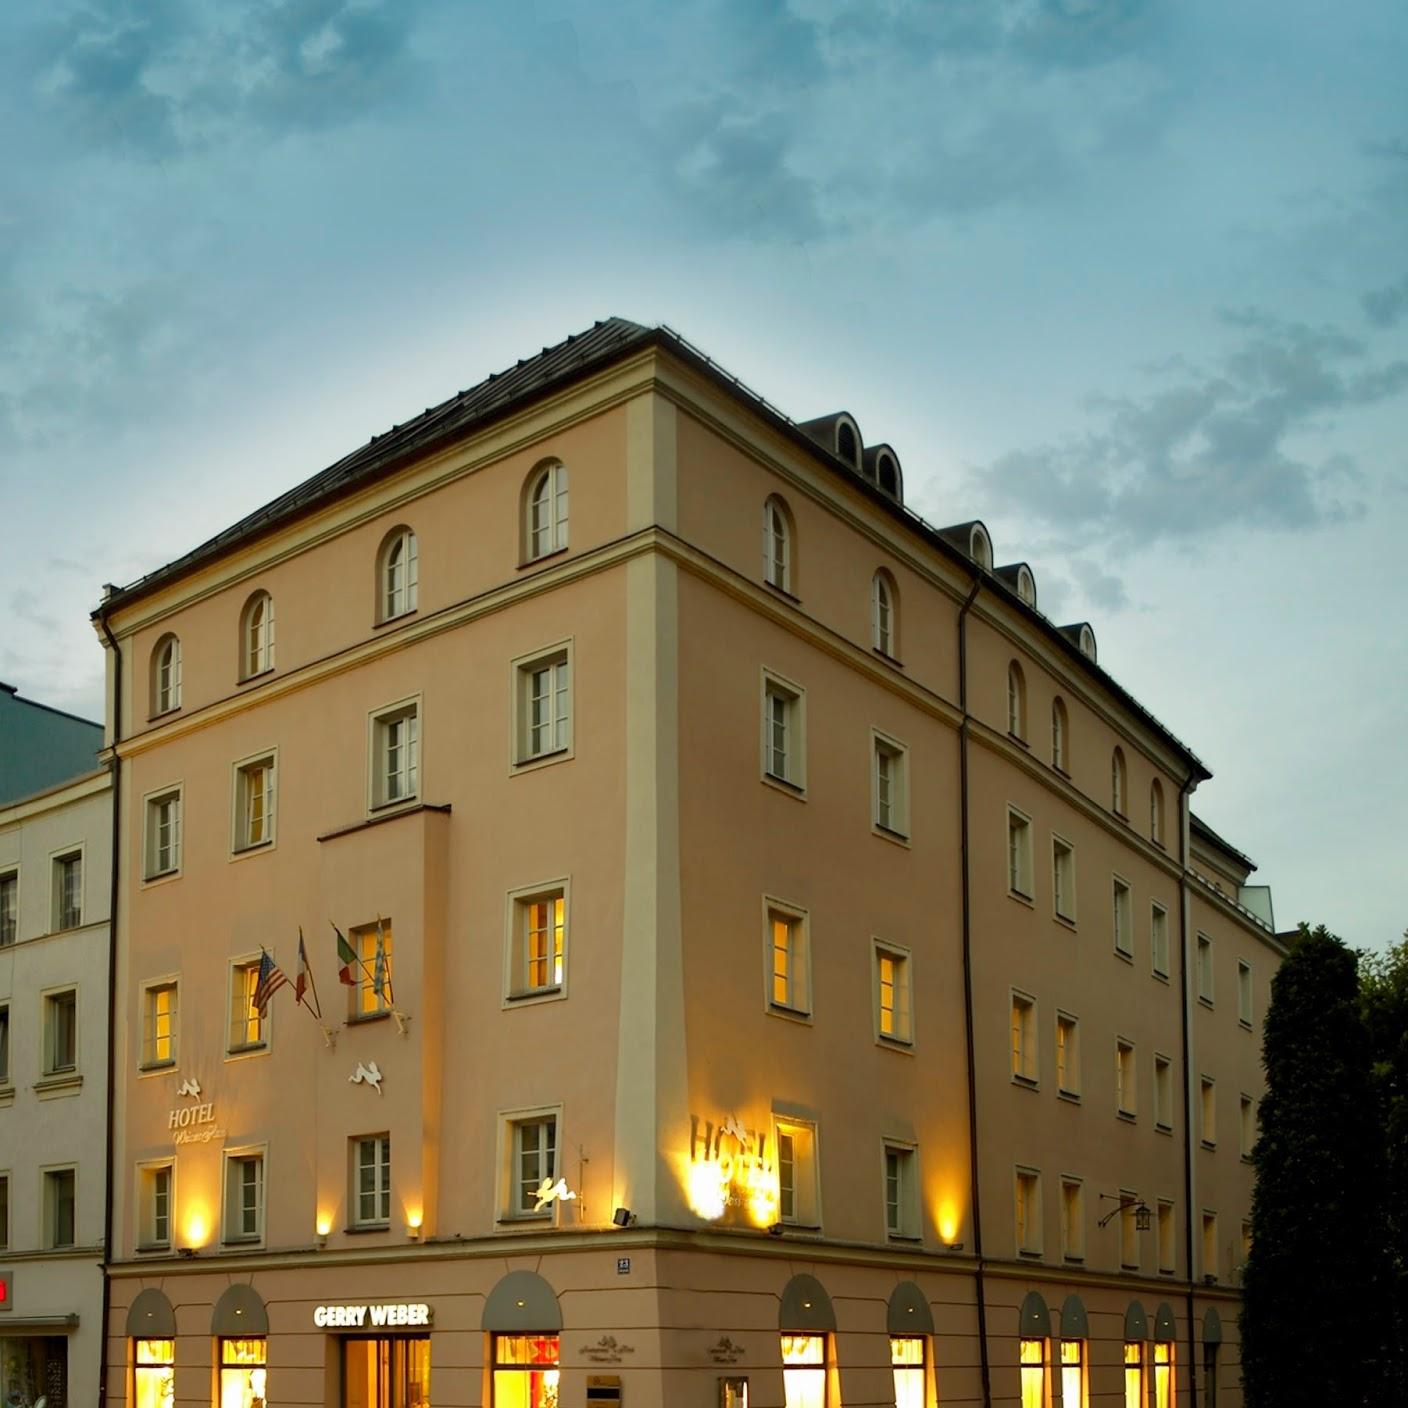 Restaurant "Centro Hotel Weisser Hase" in Passau